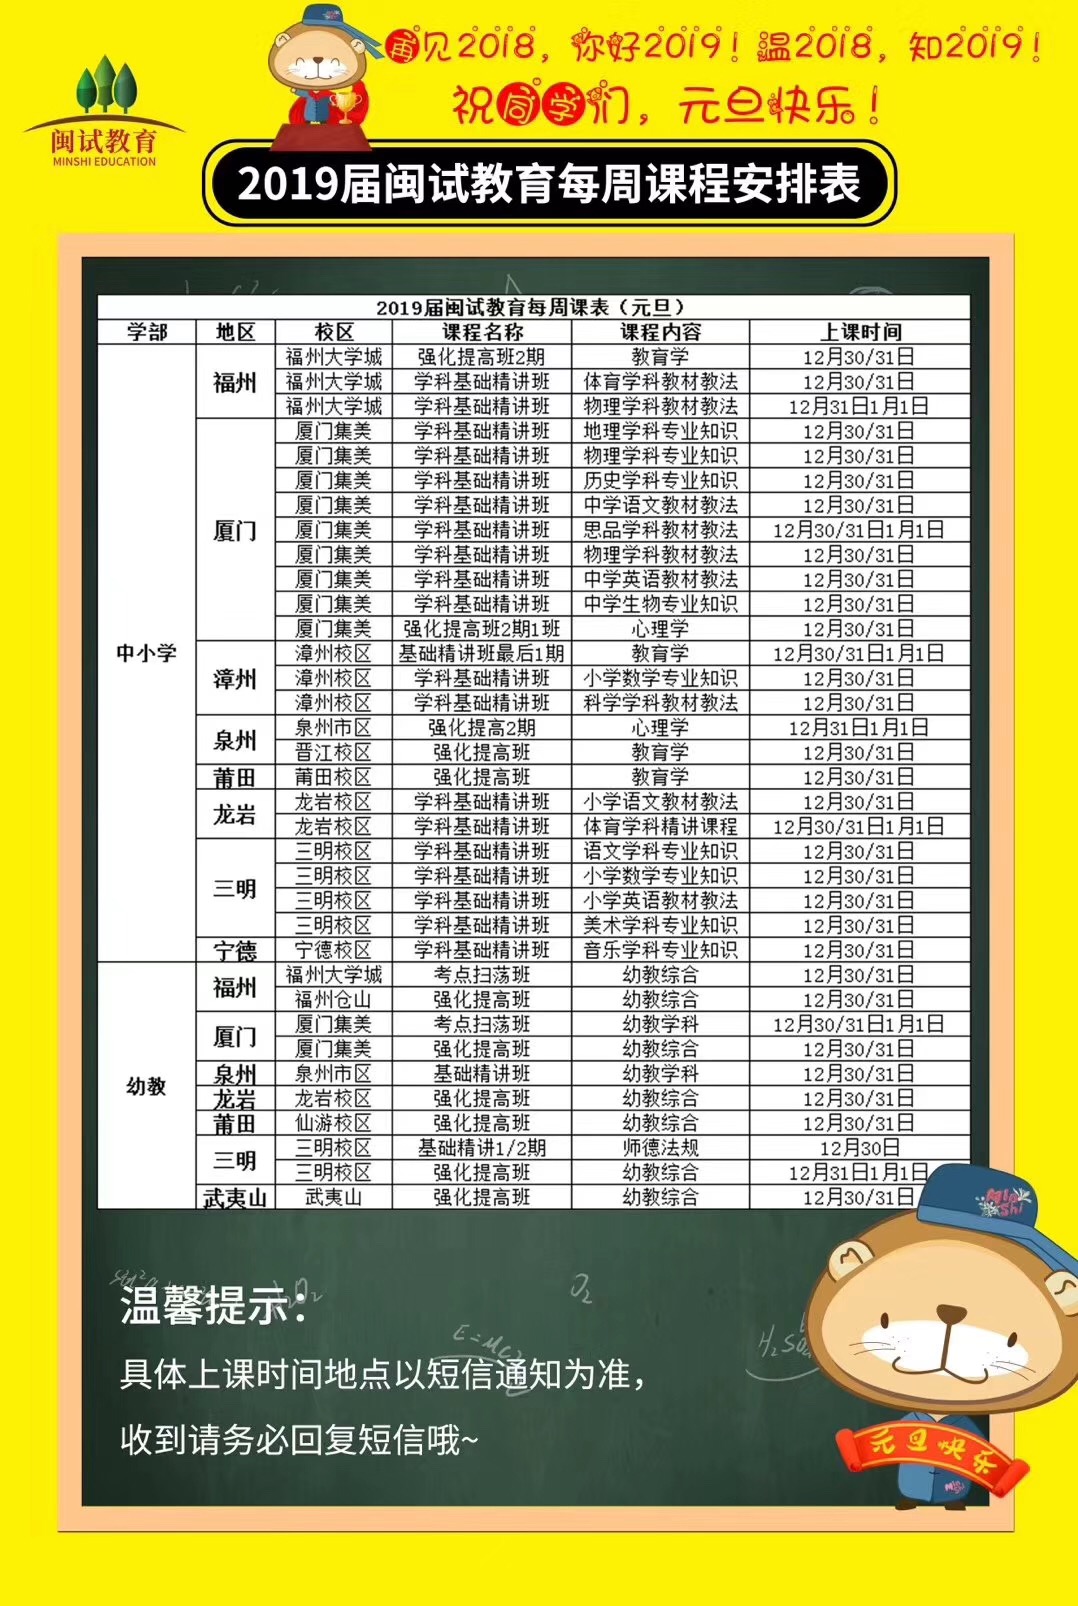 【开课通知】2019年闽试教育元旦课程安排表